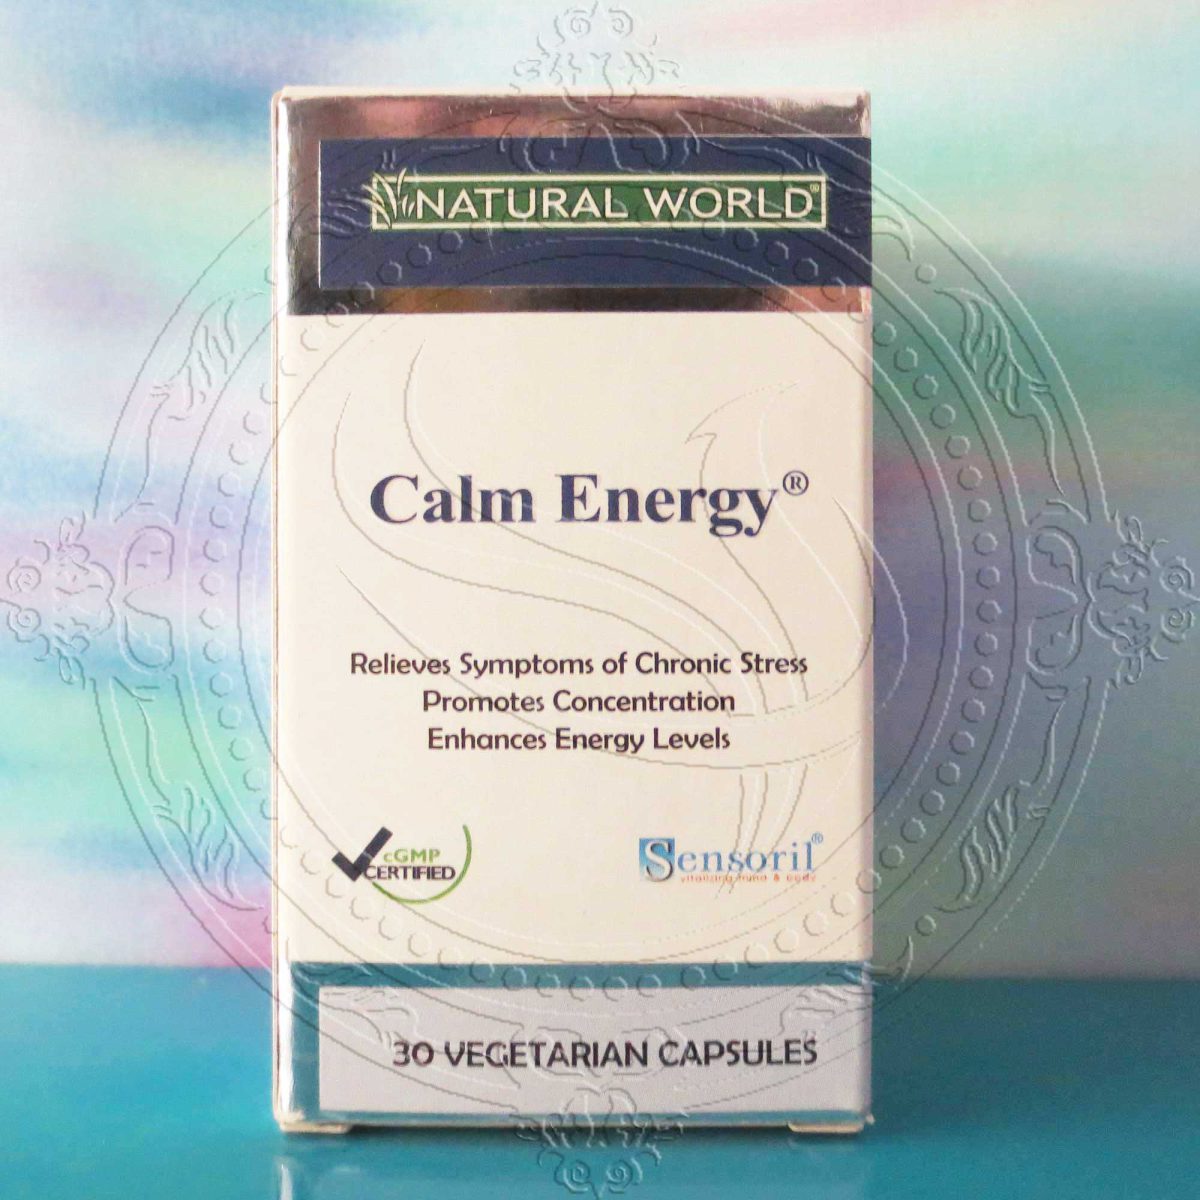 کالم انرژی calm energy